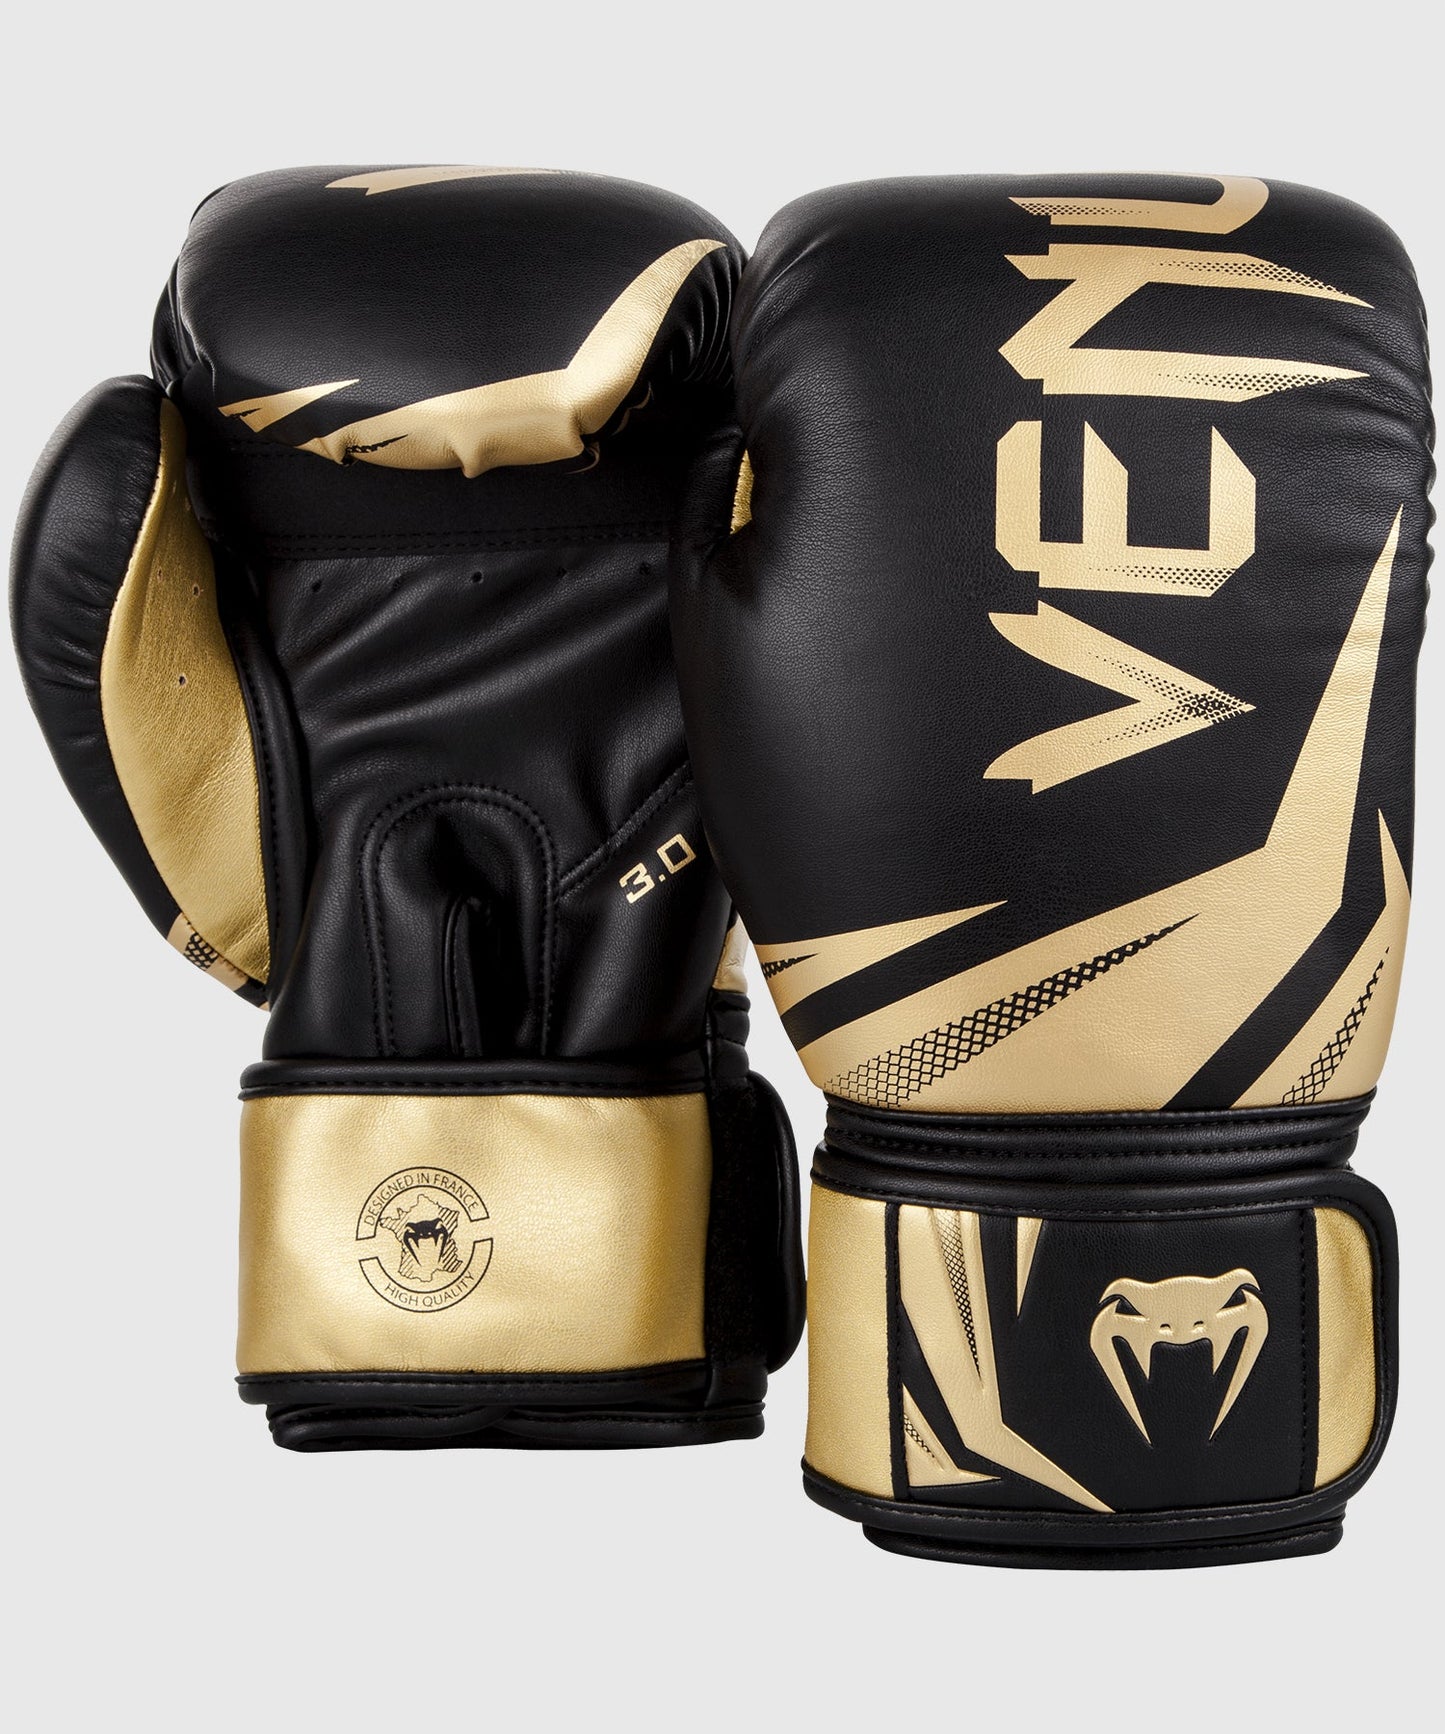 Gants de boxe Venum Challenger 3.0 avec une large protection de la main